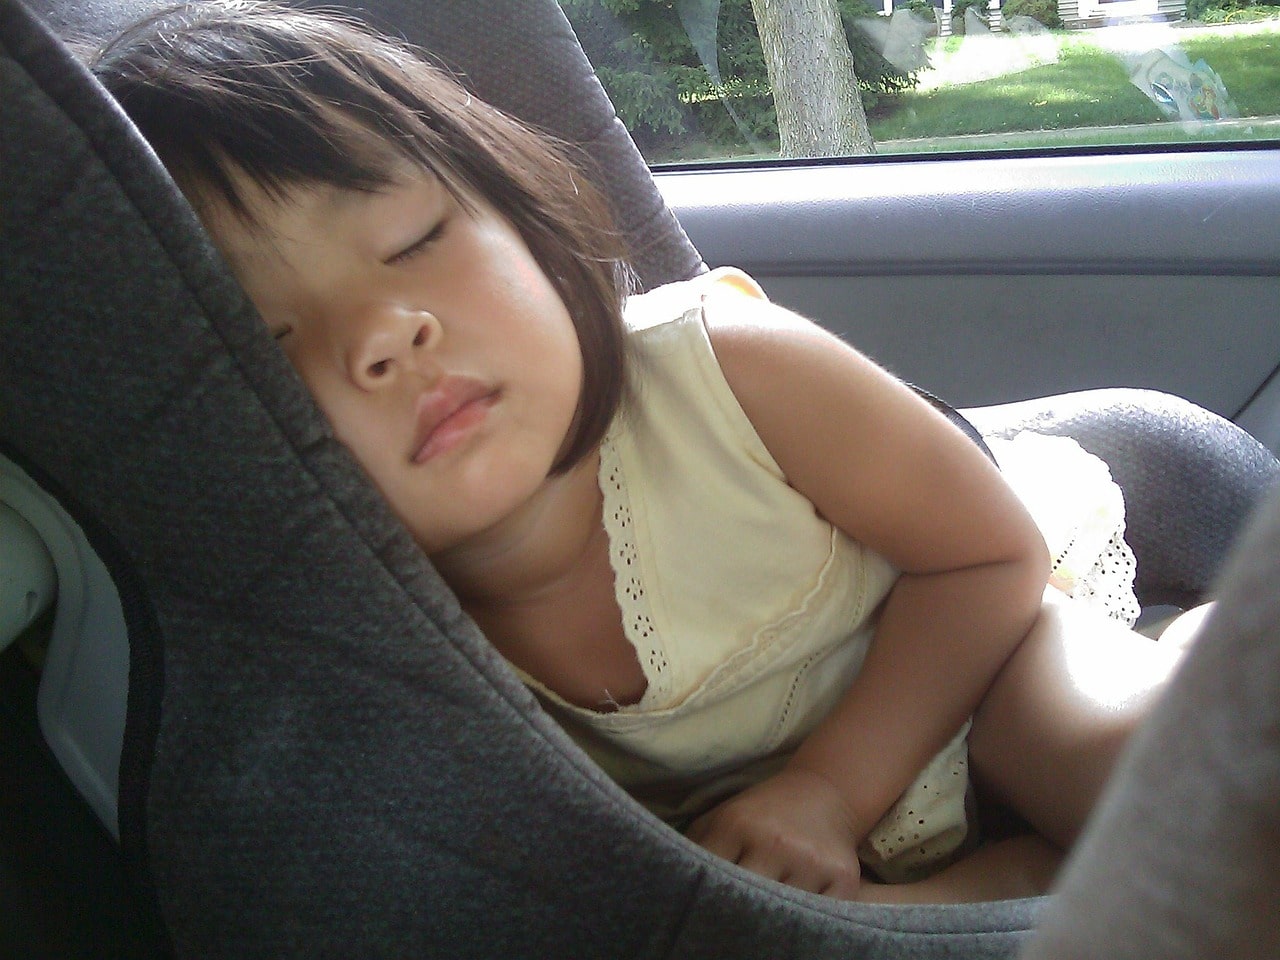 Спать в автокресле смертельно опасно для детей — что говорят исследования в США